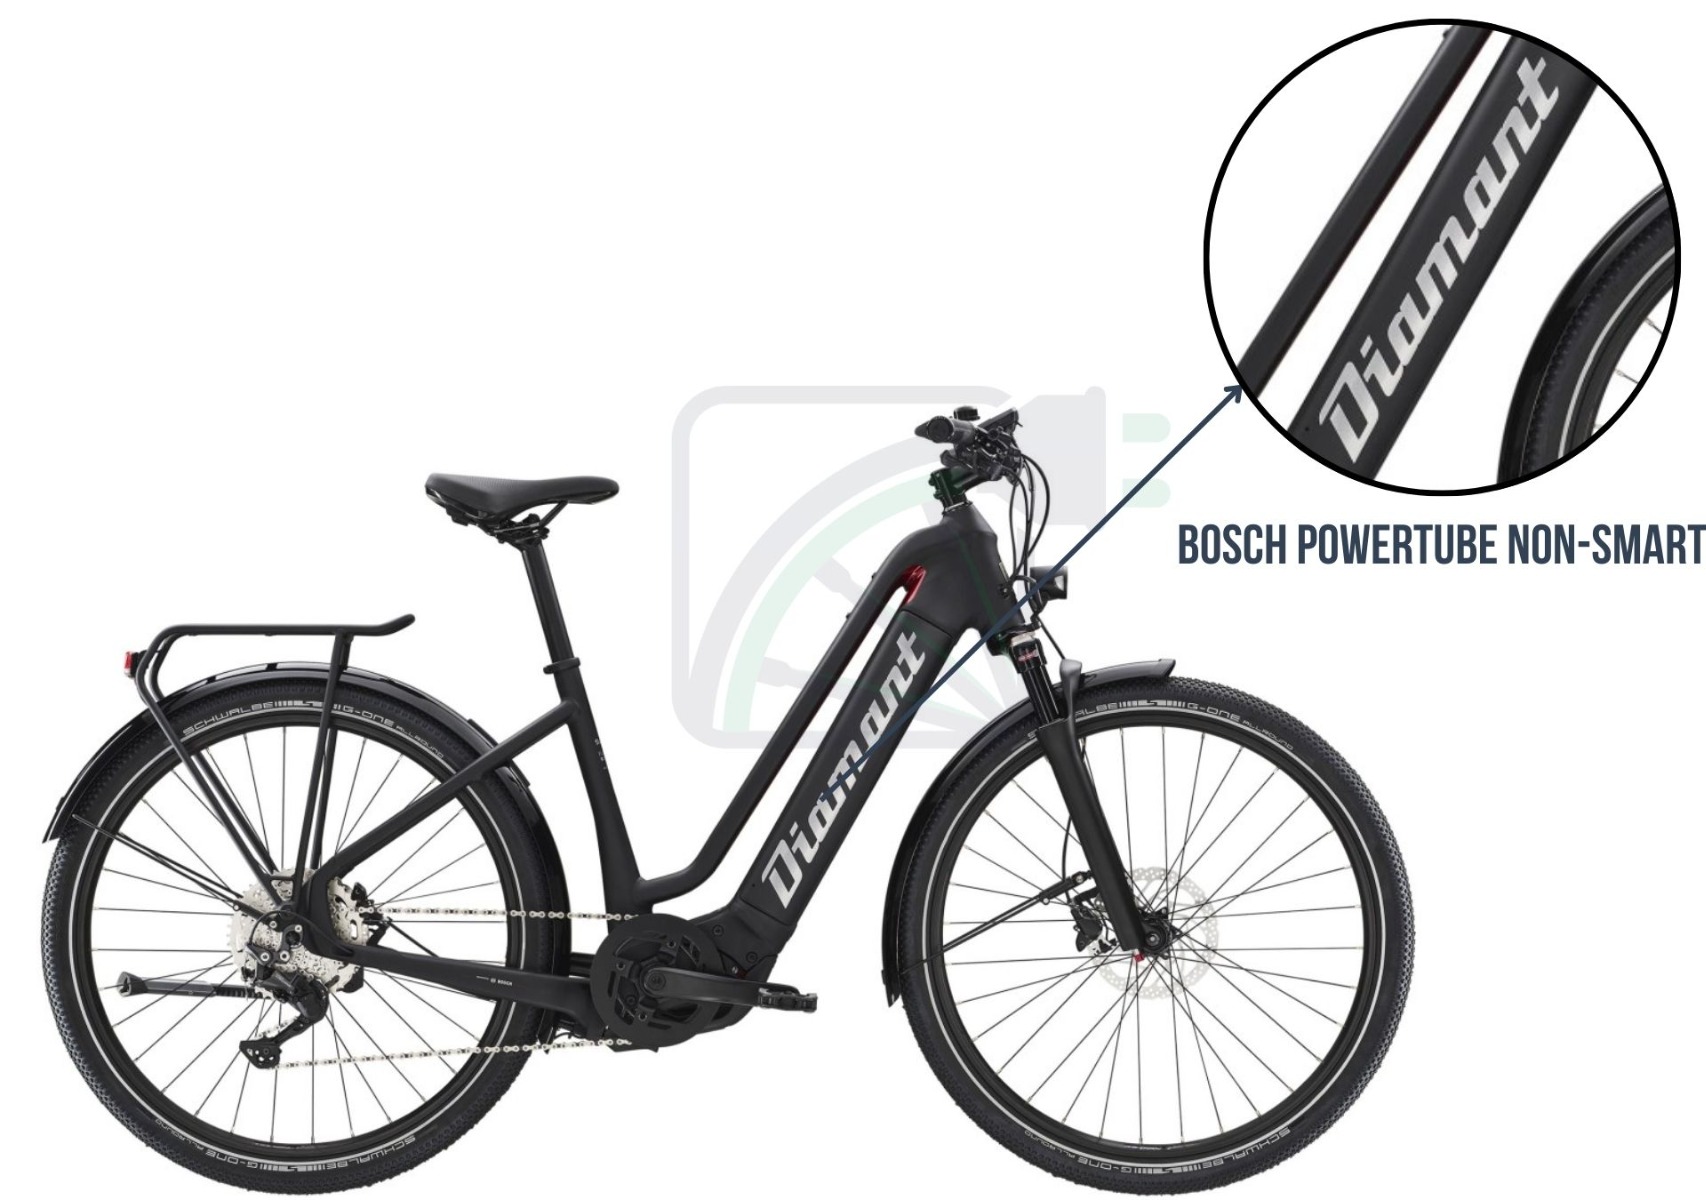 Bild eines Elektrofahrrads, bei dem die Fahrradbatterie in diesem Fahrrad hervorgehoben ist. In diesem Fall ist es die Bosch Powertube.